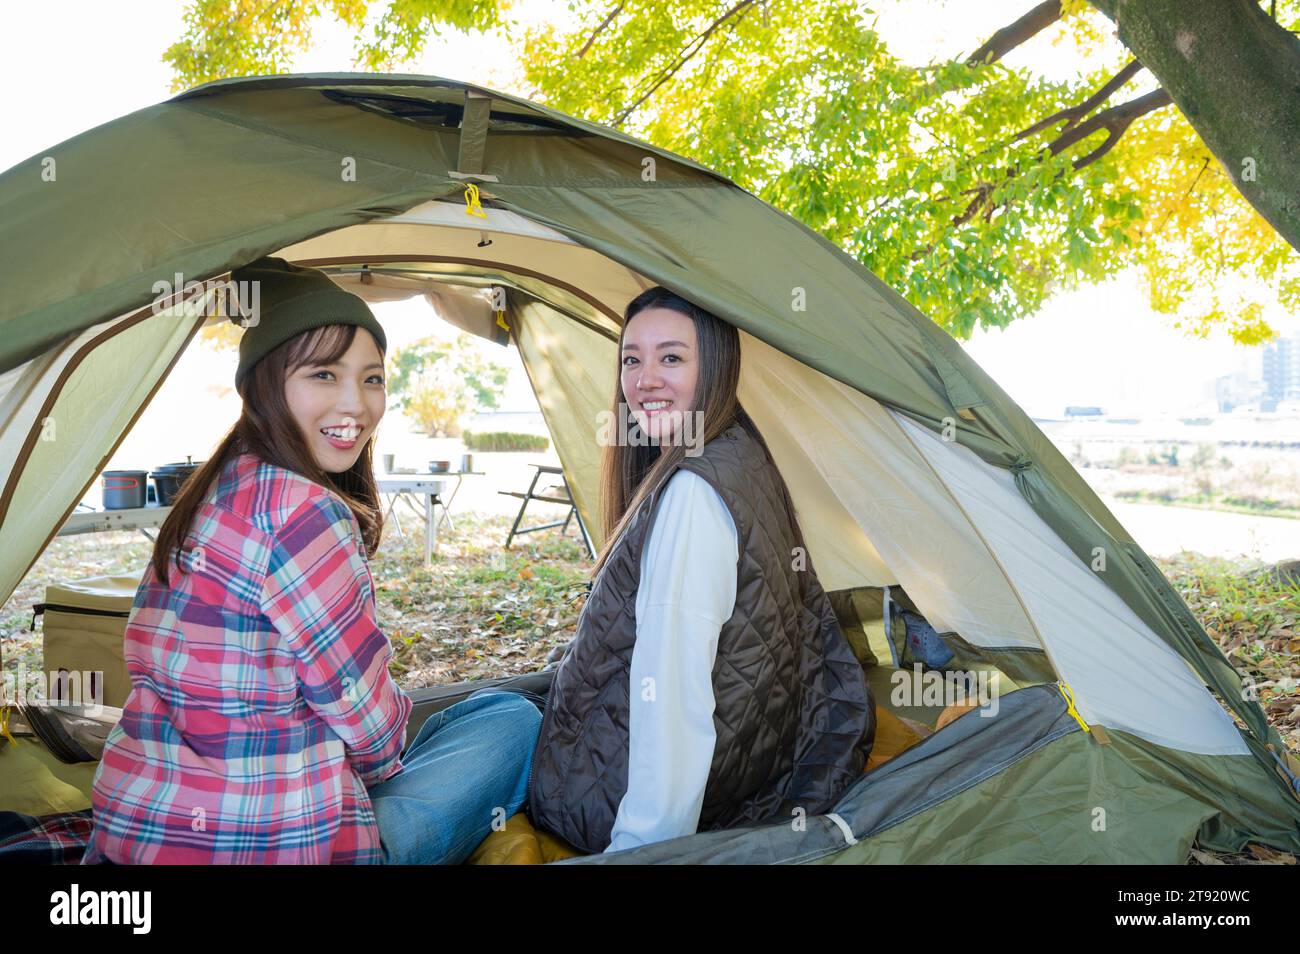 Two women enjoying camping Stock Photo